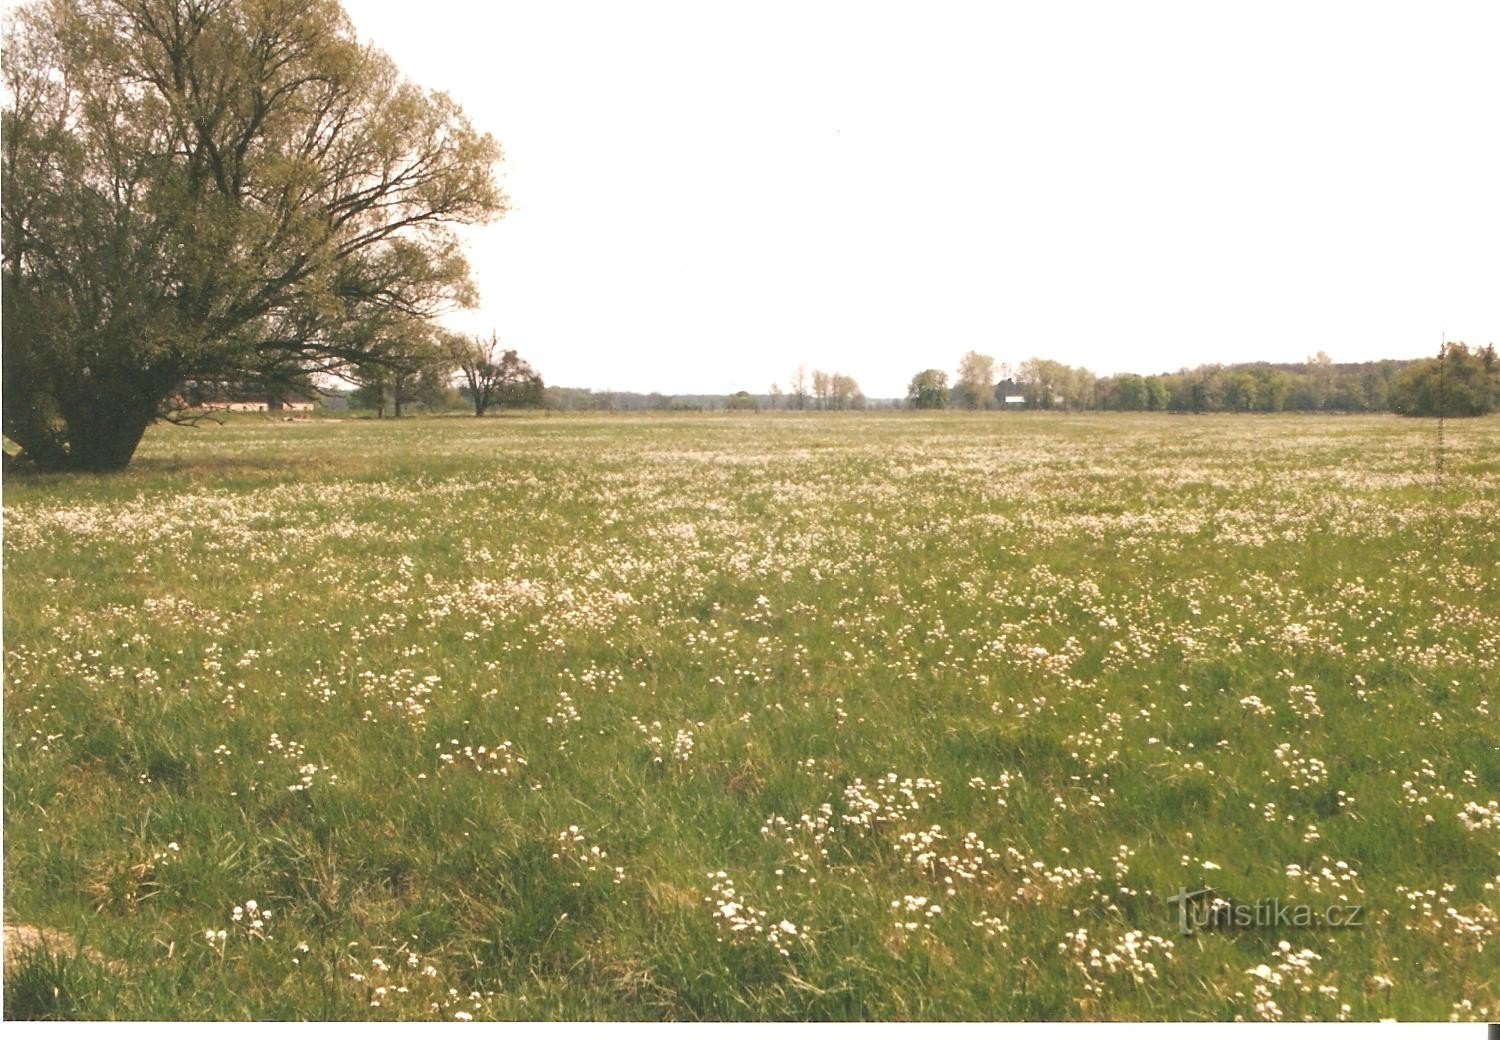 春のランスク牧草地